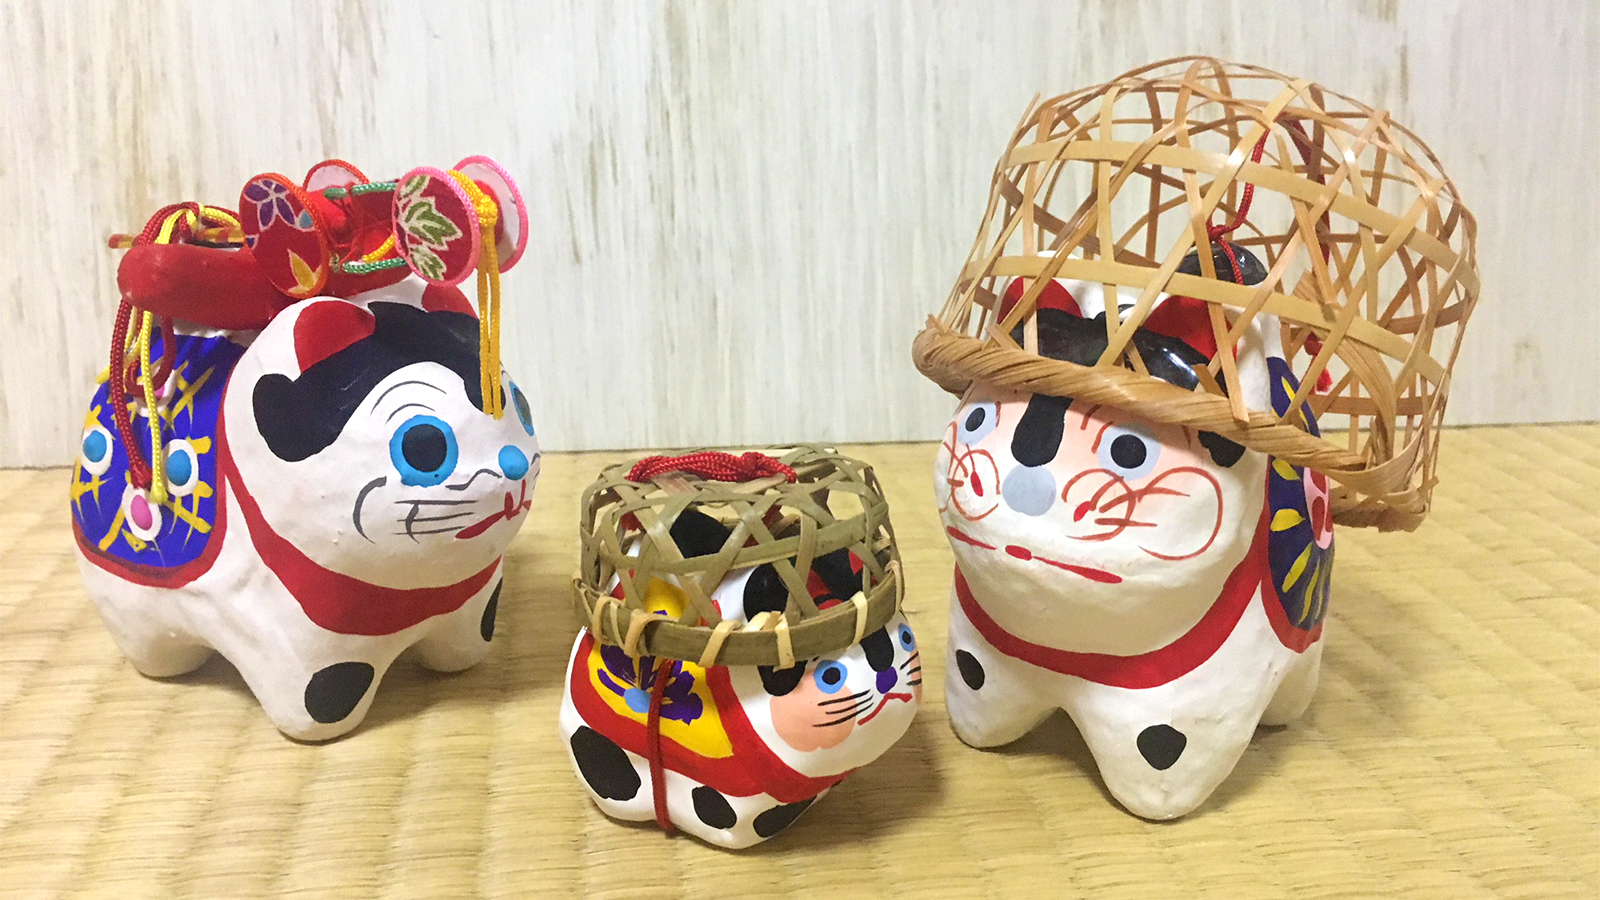 語呂合わせ・ことばあそびで幸せを贈る！―縁起かつぎのめでたい江戸郷土玩具―